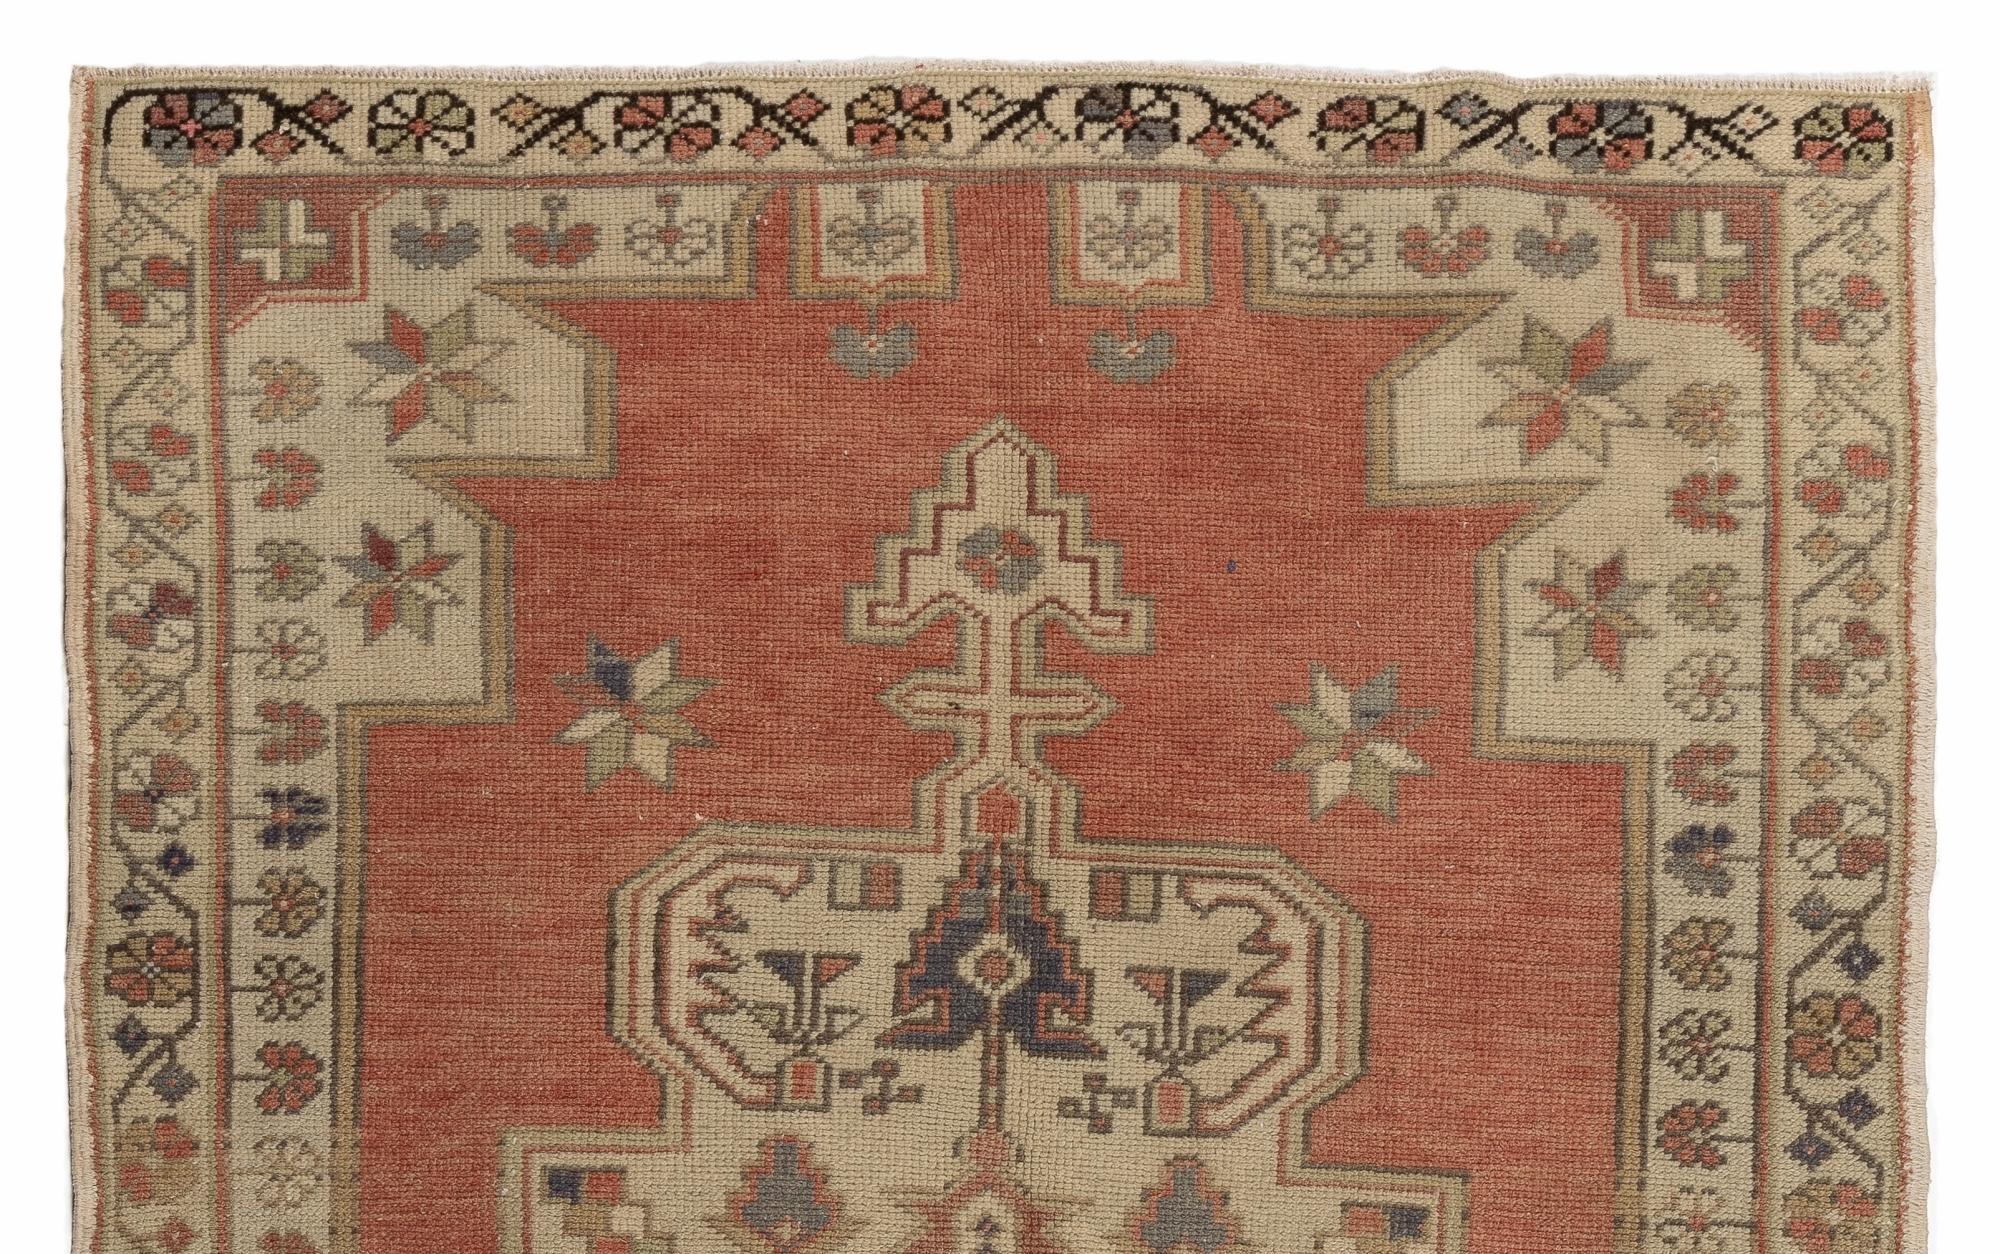 Ein einzigartiger türkischer Teppich aus der Mitte des Jahrhunderts in gut erhaltenem Zustand.
Der Teppich ist aus natürlicher Schafwolle handgeknüpft und hat einen weichen, mittelhohen Flor. Er ist fein gewebt, sehr robust und eignet sich sowohl